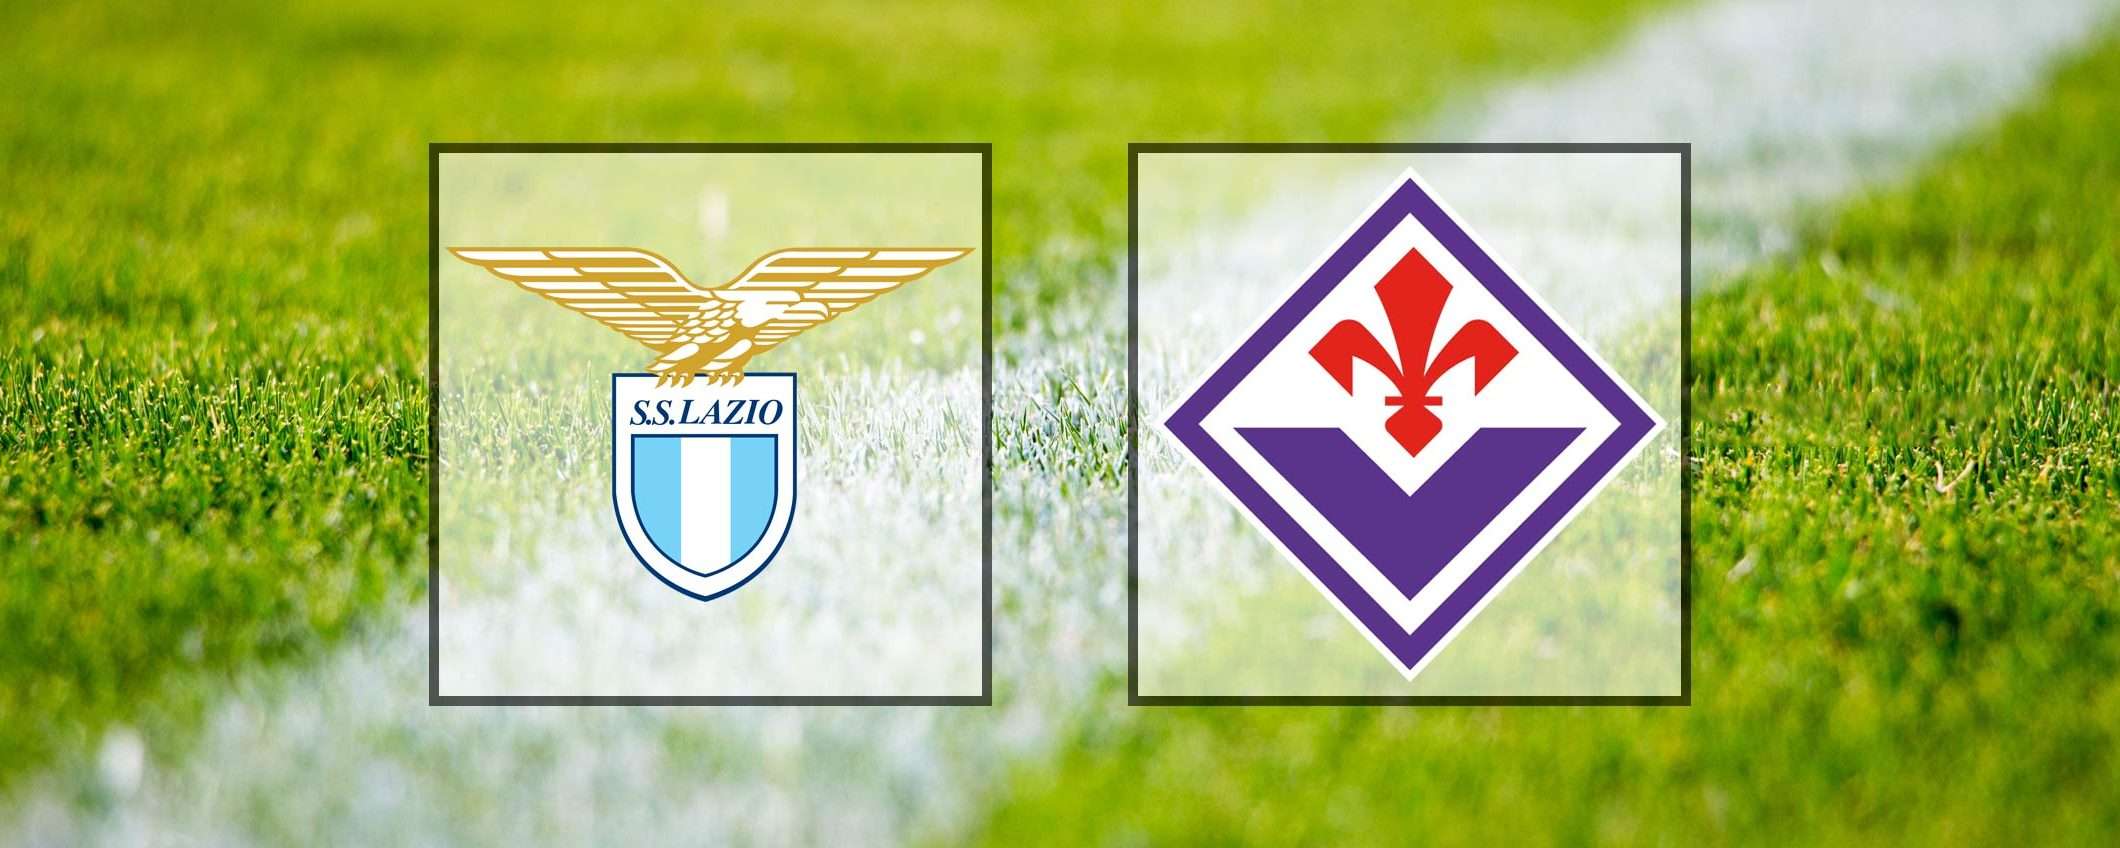 Come vedere Lazio-Fiorentina in streaming